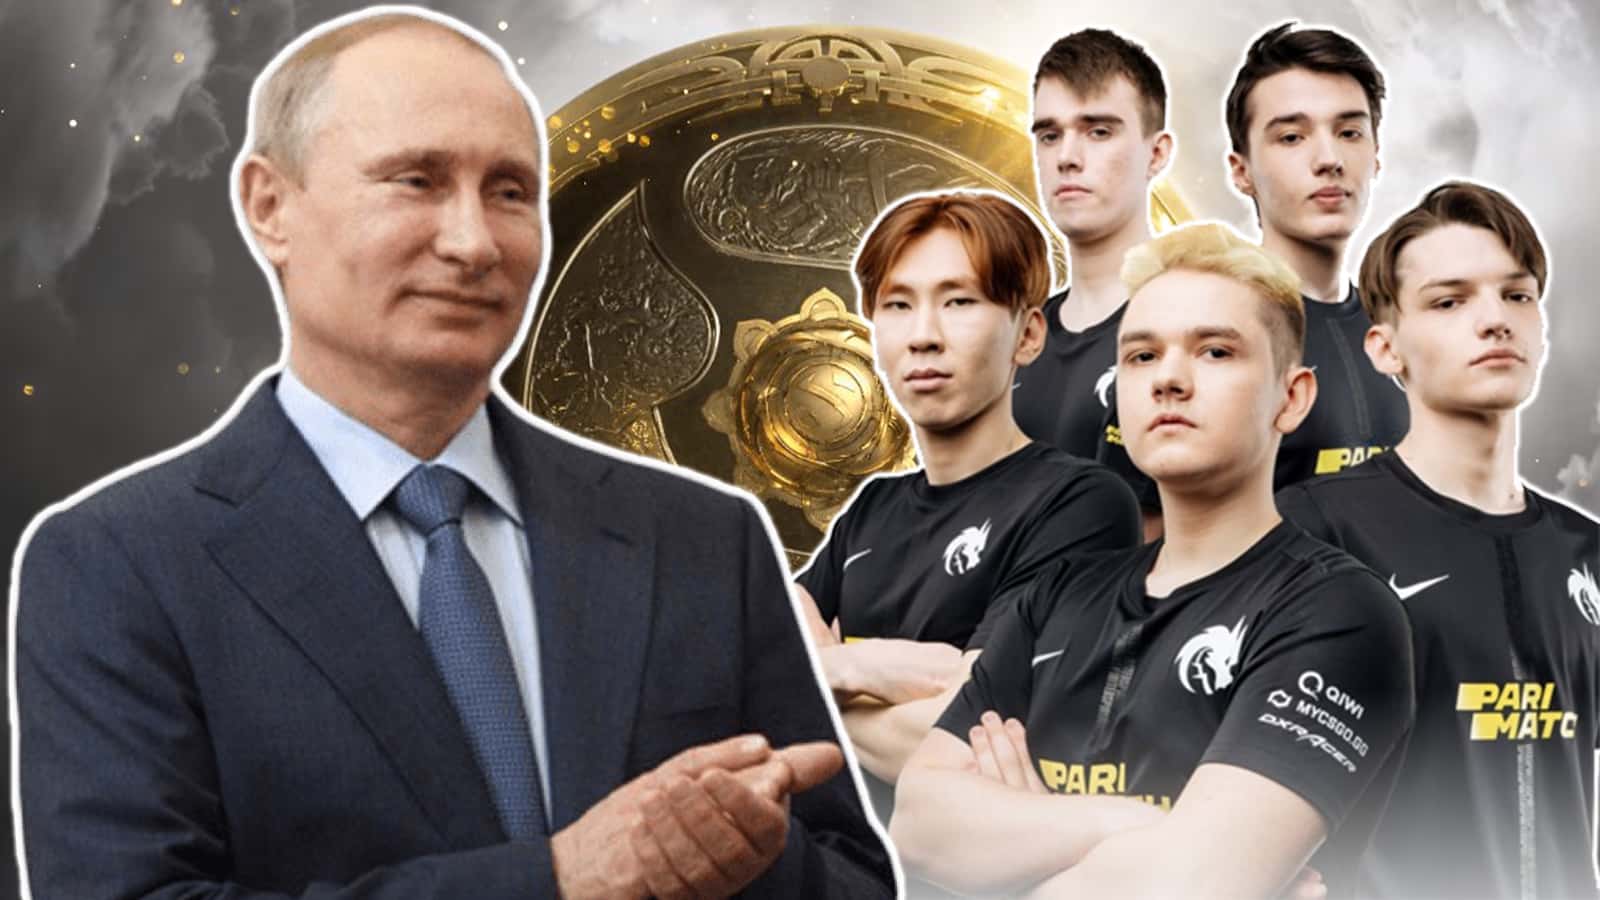 Putin congratulates Team Spirit